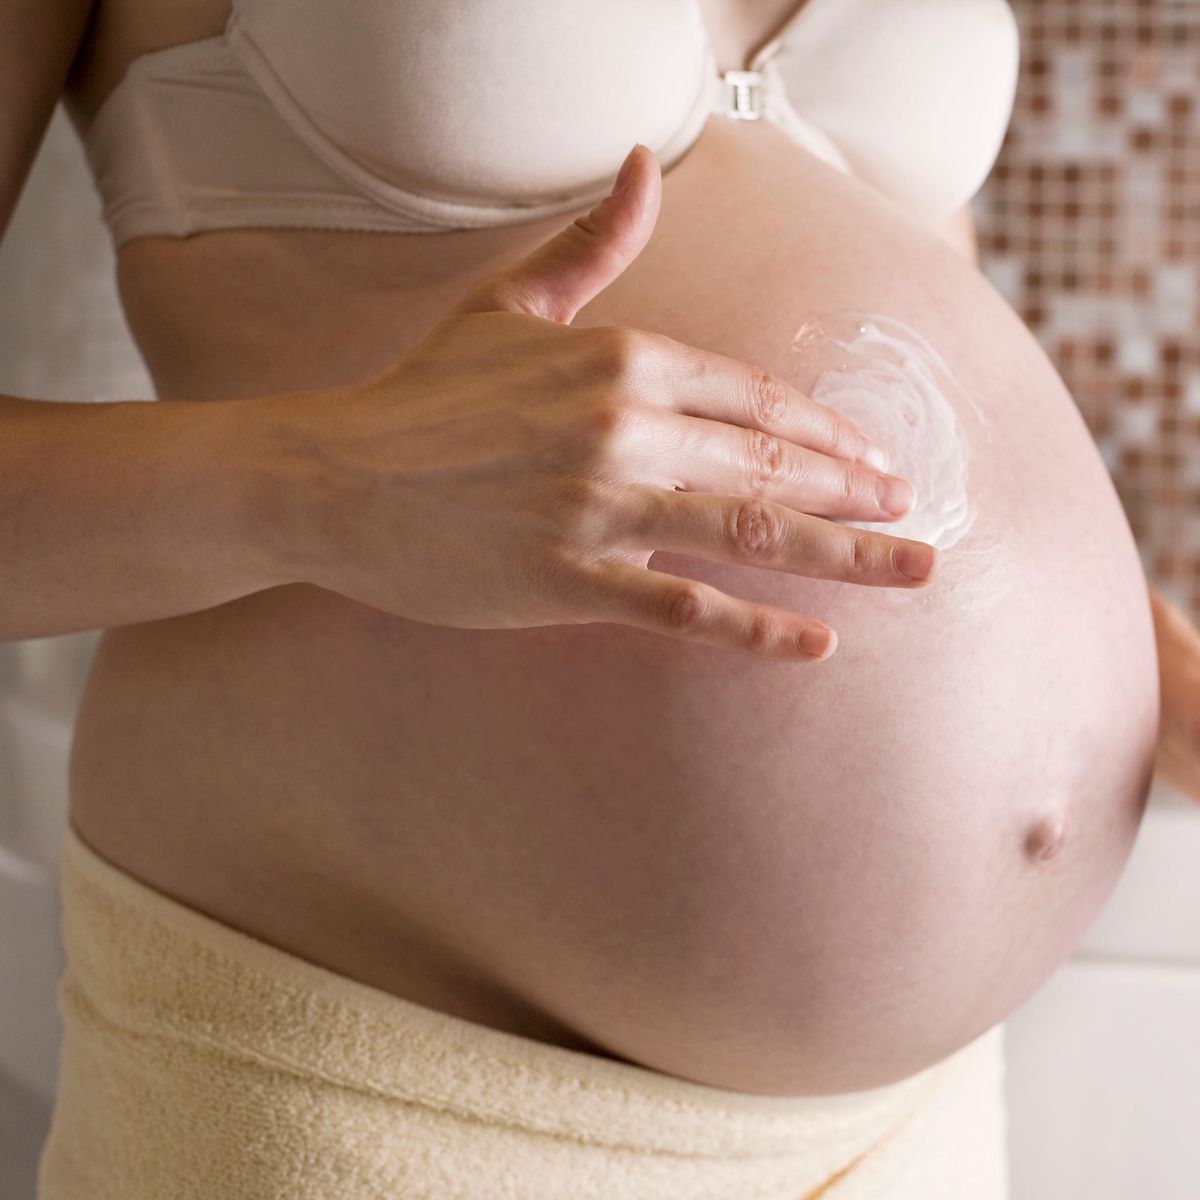 Bauch schwanger streifen am brauner nicht Bauchnabel nach